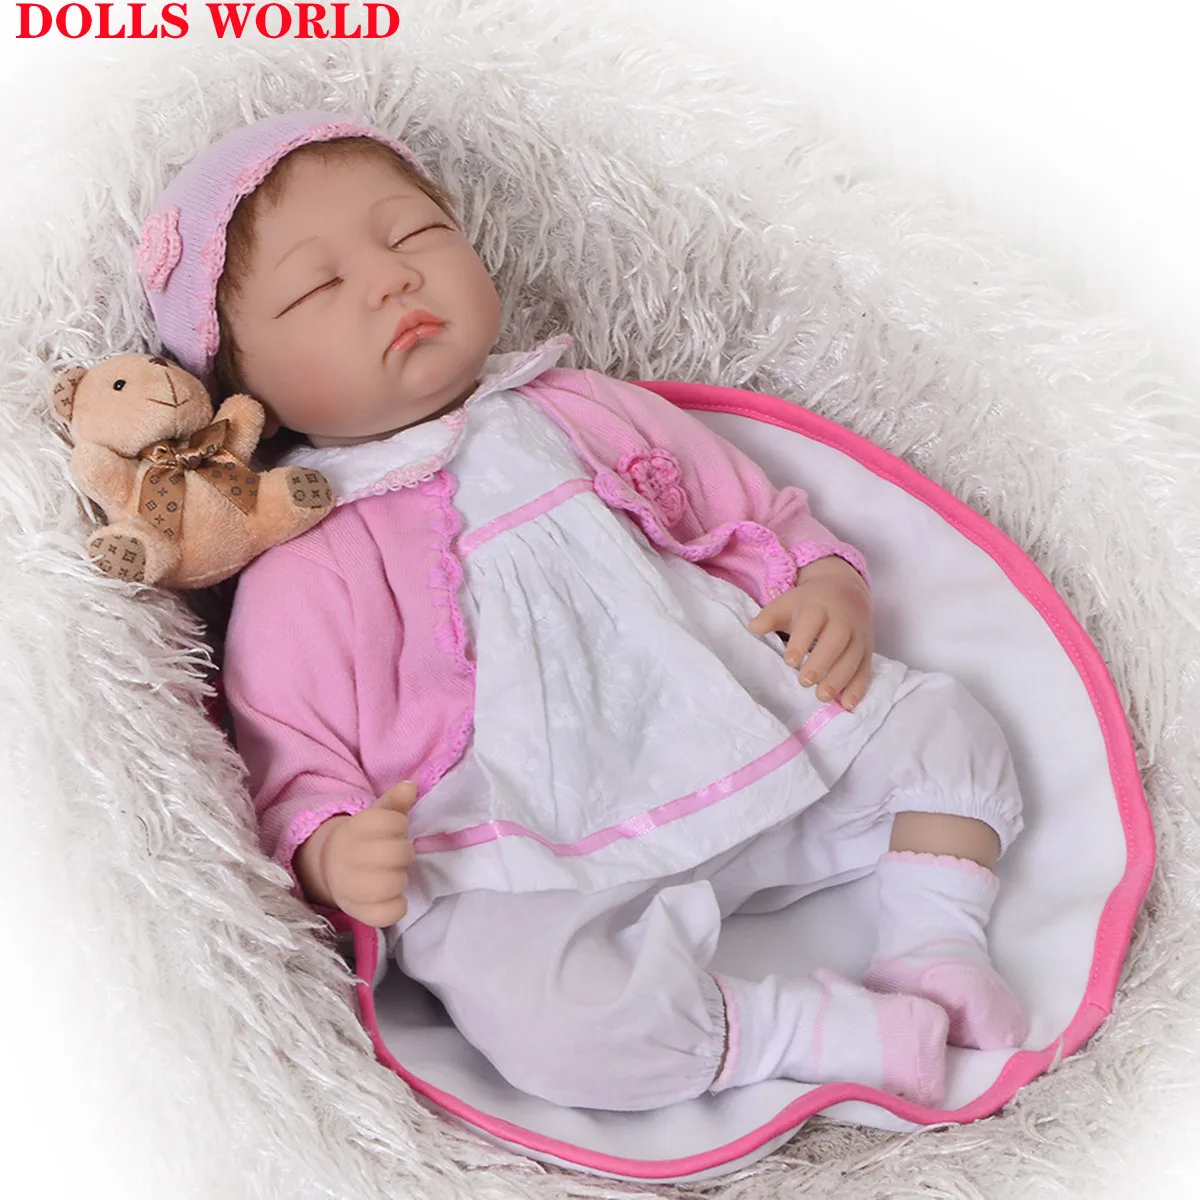 

Кукла реборн Мягкая силиконовая, Спящая маленькая кукла с закрытыми глазами, красивая на ощупь, модный подарок, 55 см